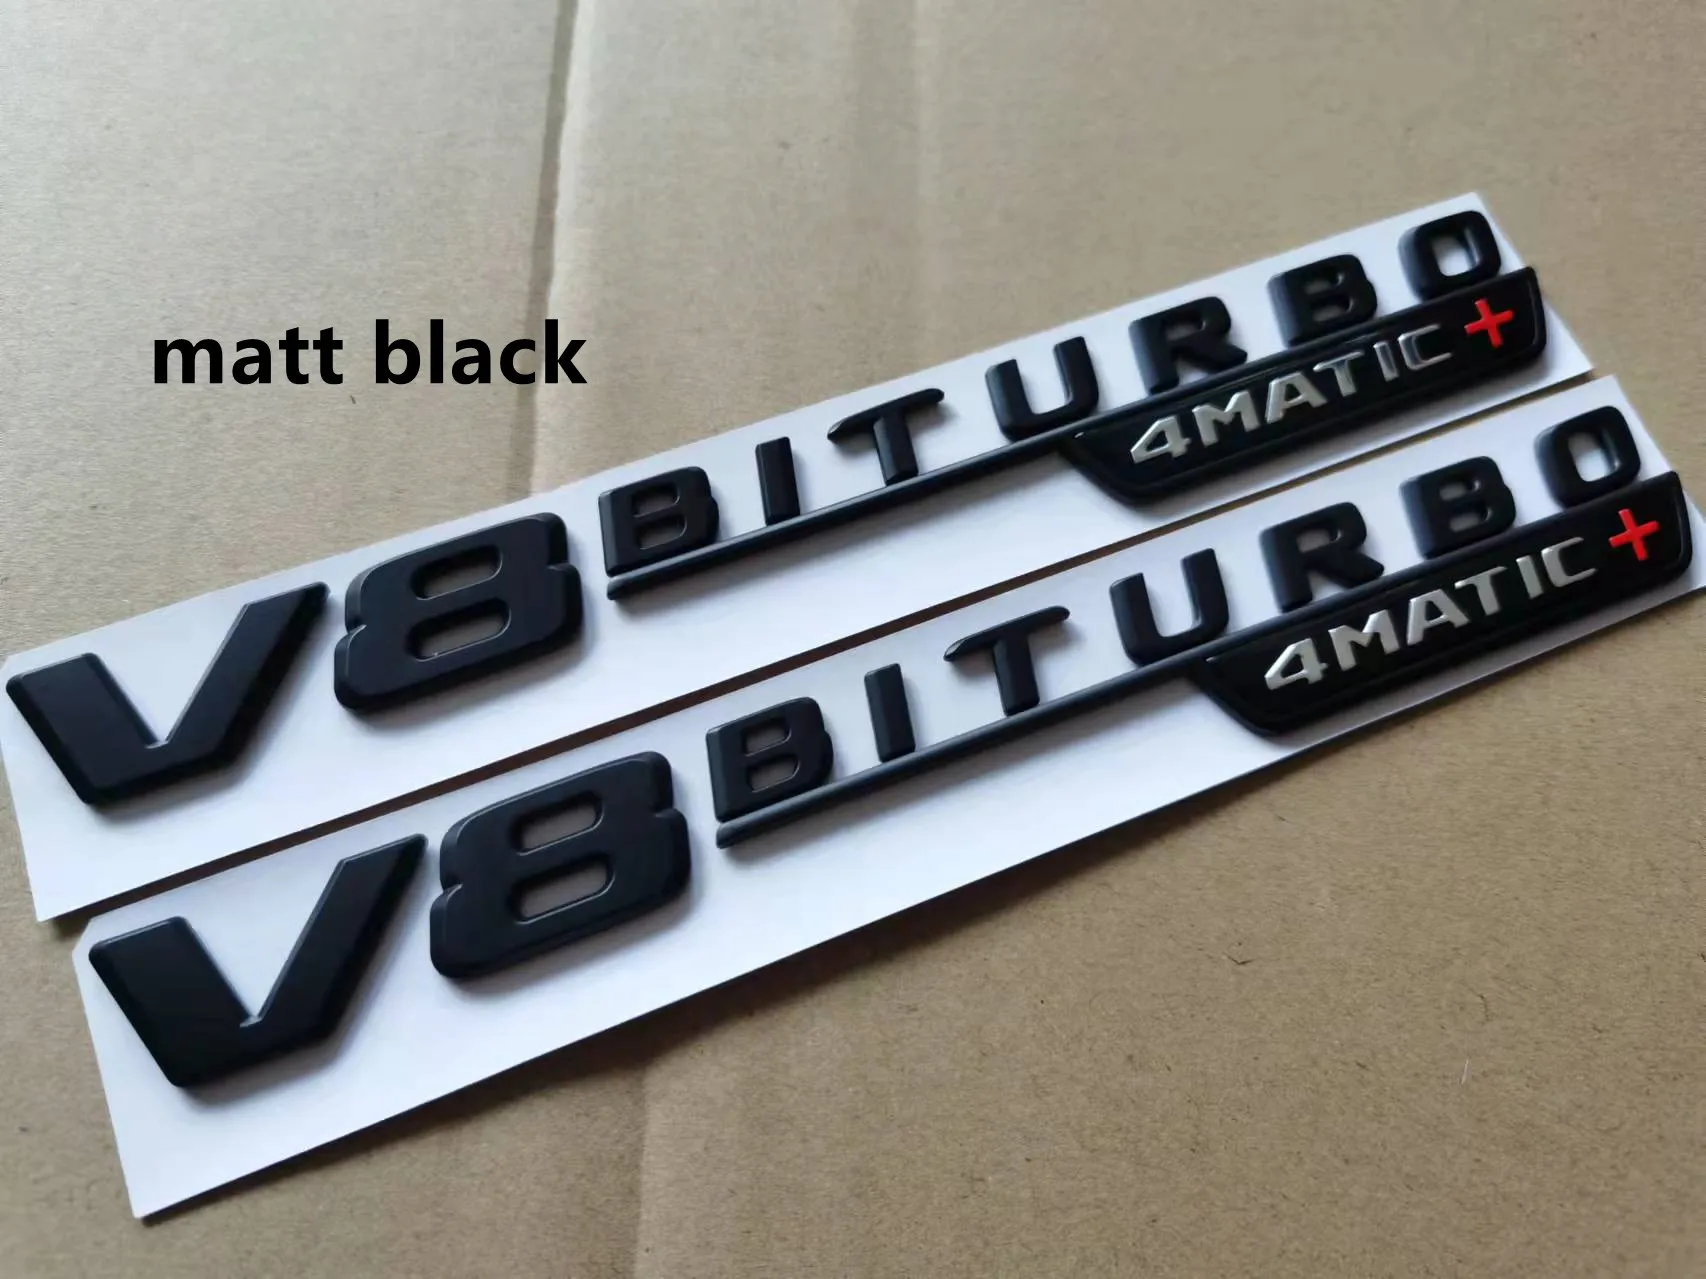 2pcs V8 BITURBO 4matic+ car fender emblem sticker for Mercedes Benz AMG w117 cla45 w205 c63 w212 e63 w207 w176 a45 x156 gla45